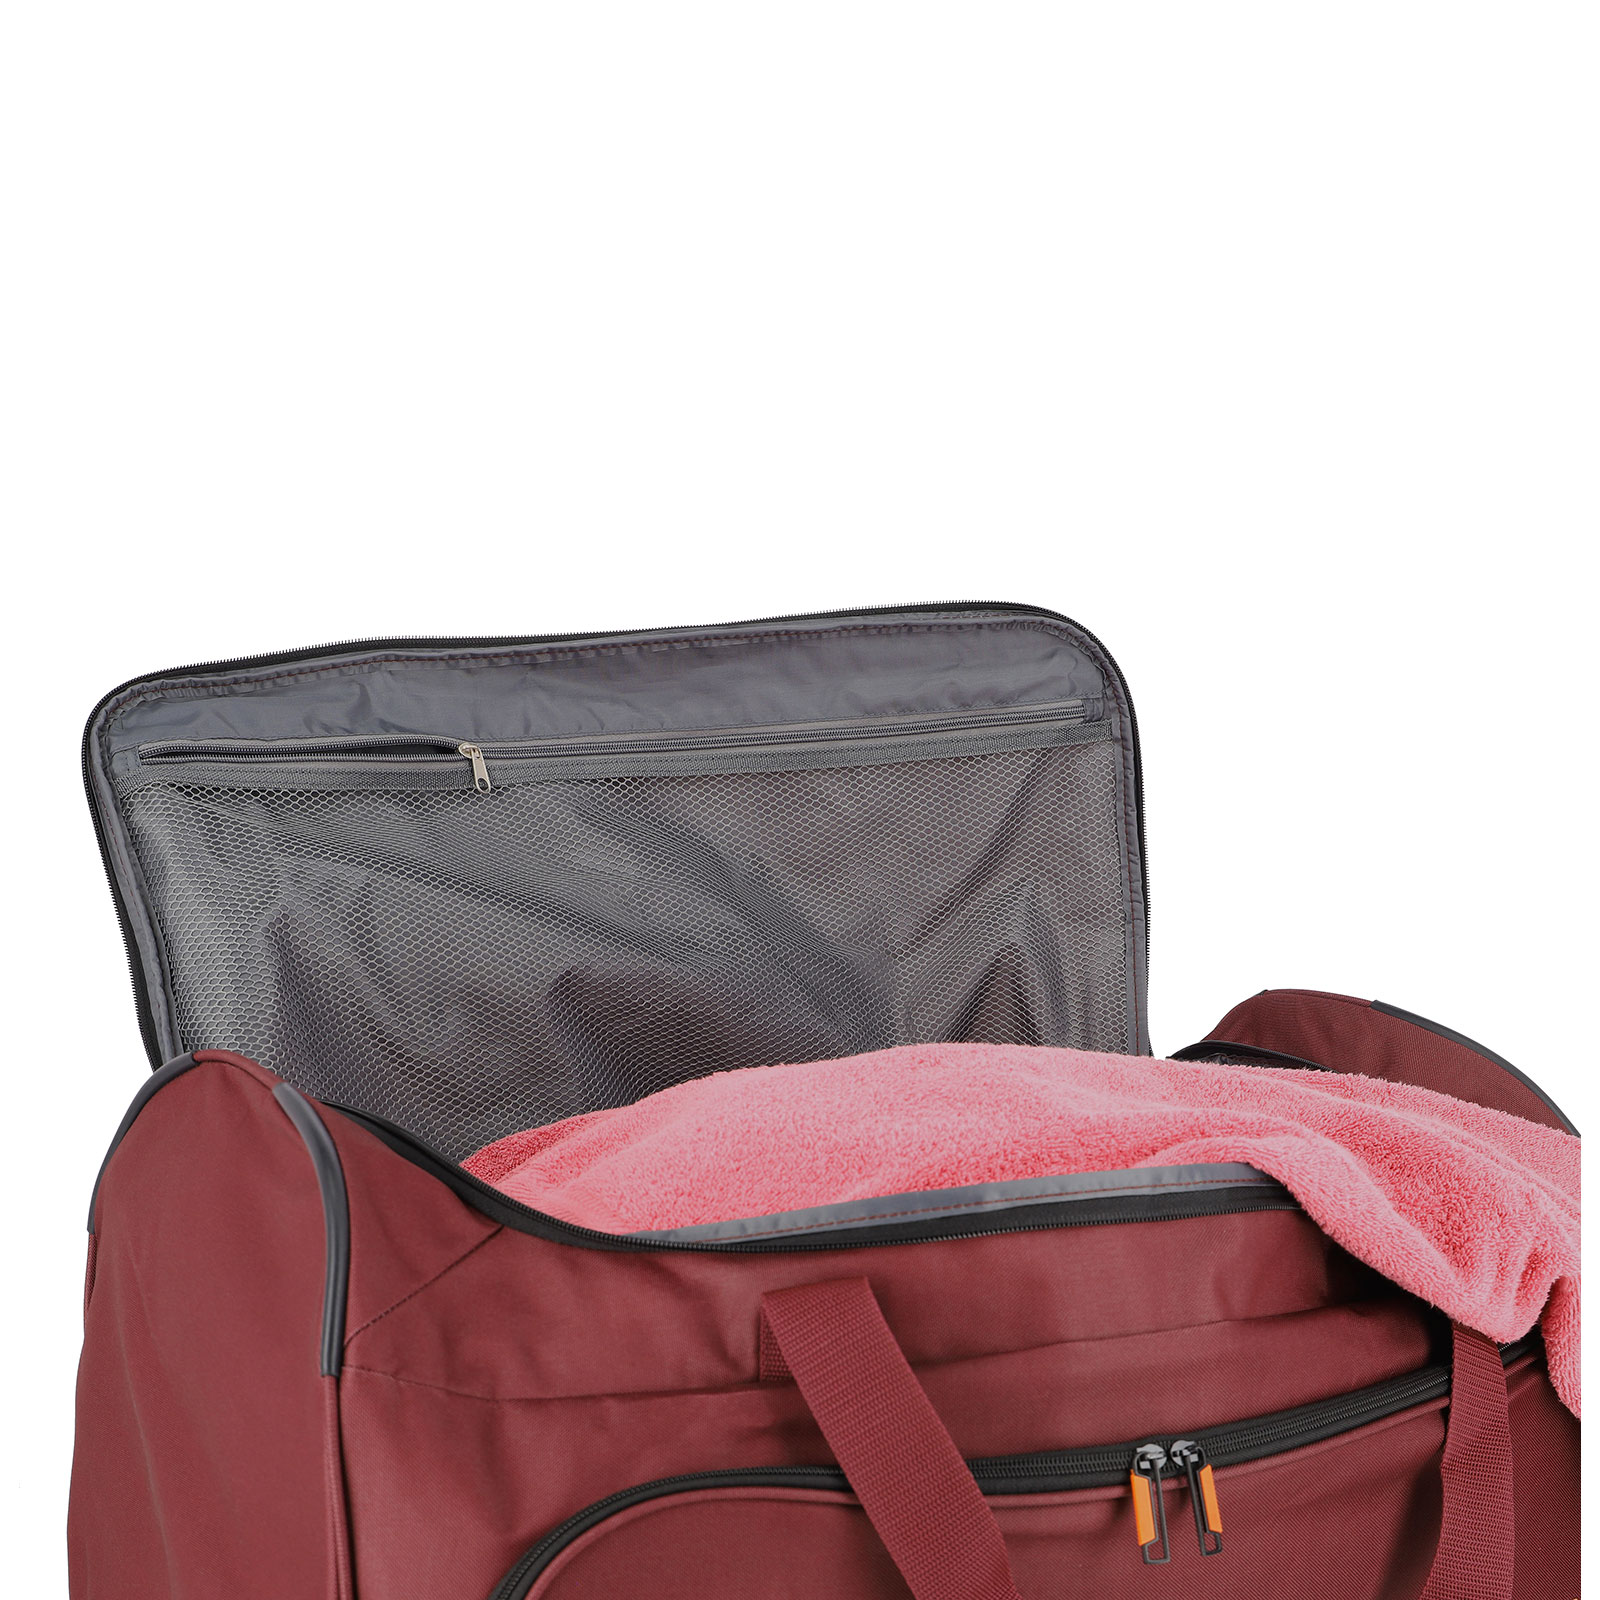 Reisetasche Basics Koffermarkt günstig | 70 travelite kaufen: Trolley Fresh cm 2 Rollen